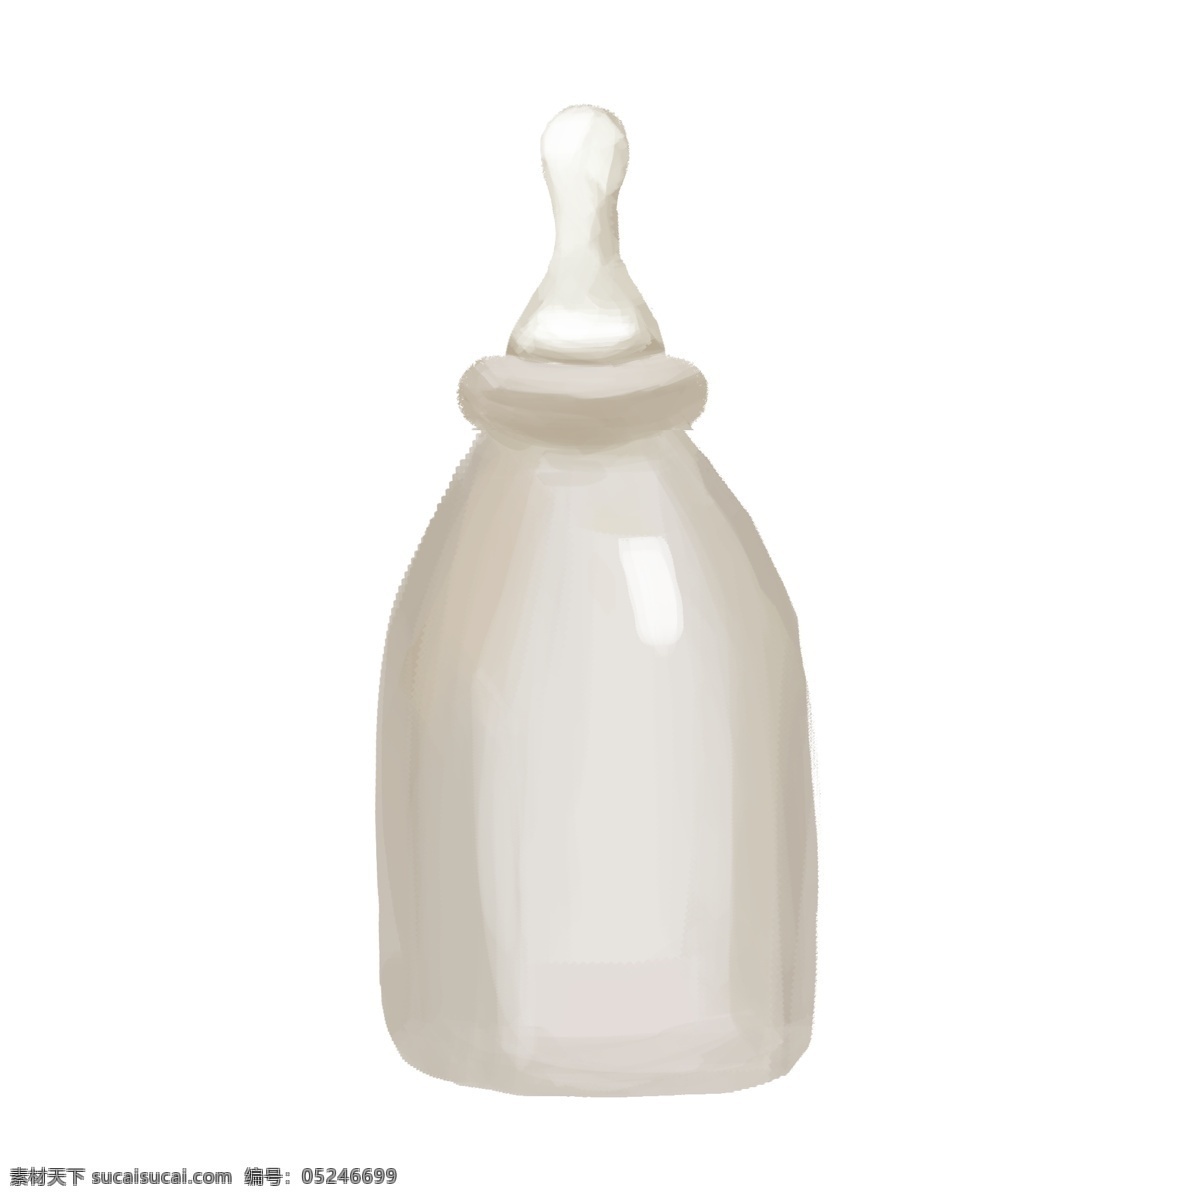 手绘 白色 儿童 奶瓶 儿童奶瓶 儿童玩具 儿童用具 婴儿用品 手绘儿童奶瓶 白色儿童奶瓶 白色奶瓶